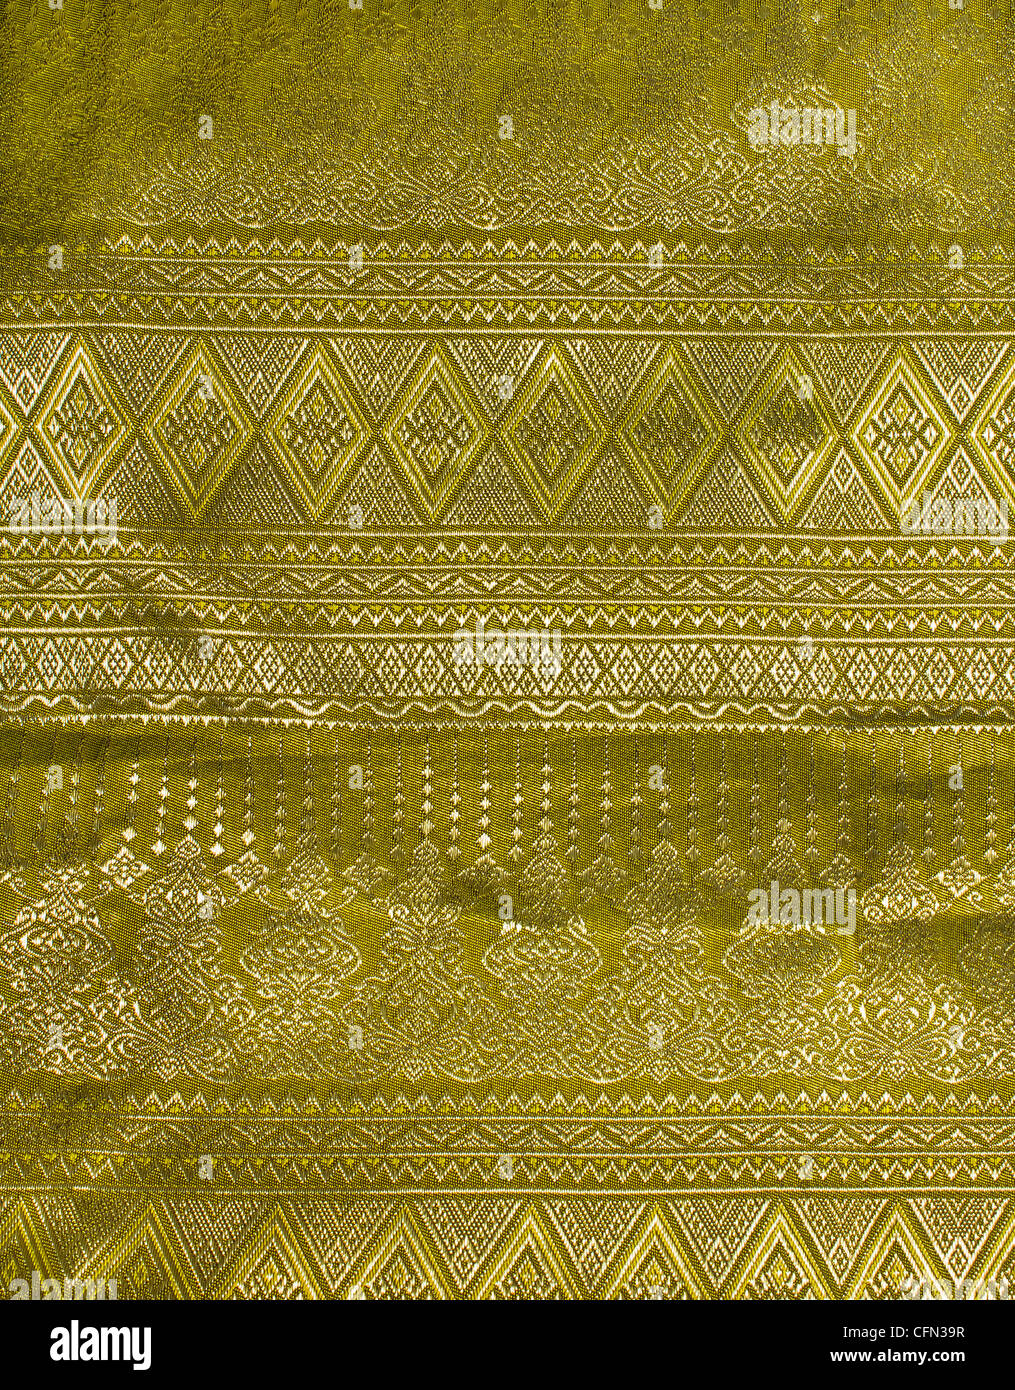 Fond tissu en soie thaïlandaise thaï traditionnel, tissus tissés à la main. Banque D'Images